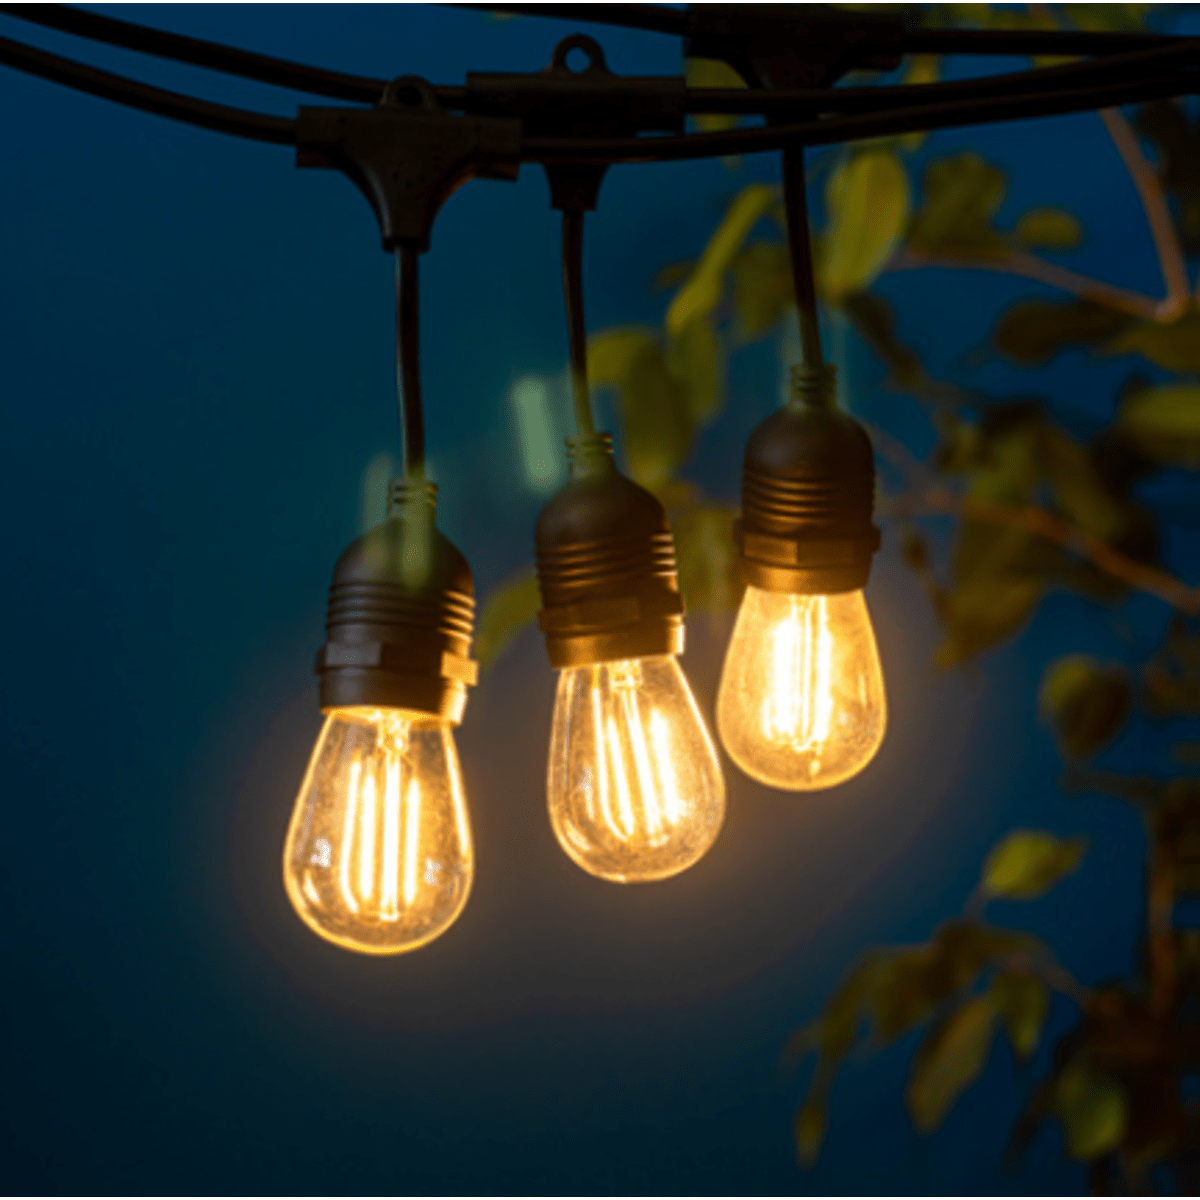 Litehouse Solar LED Festoon Traditional Bulb String Lights